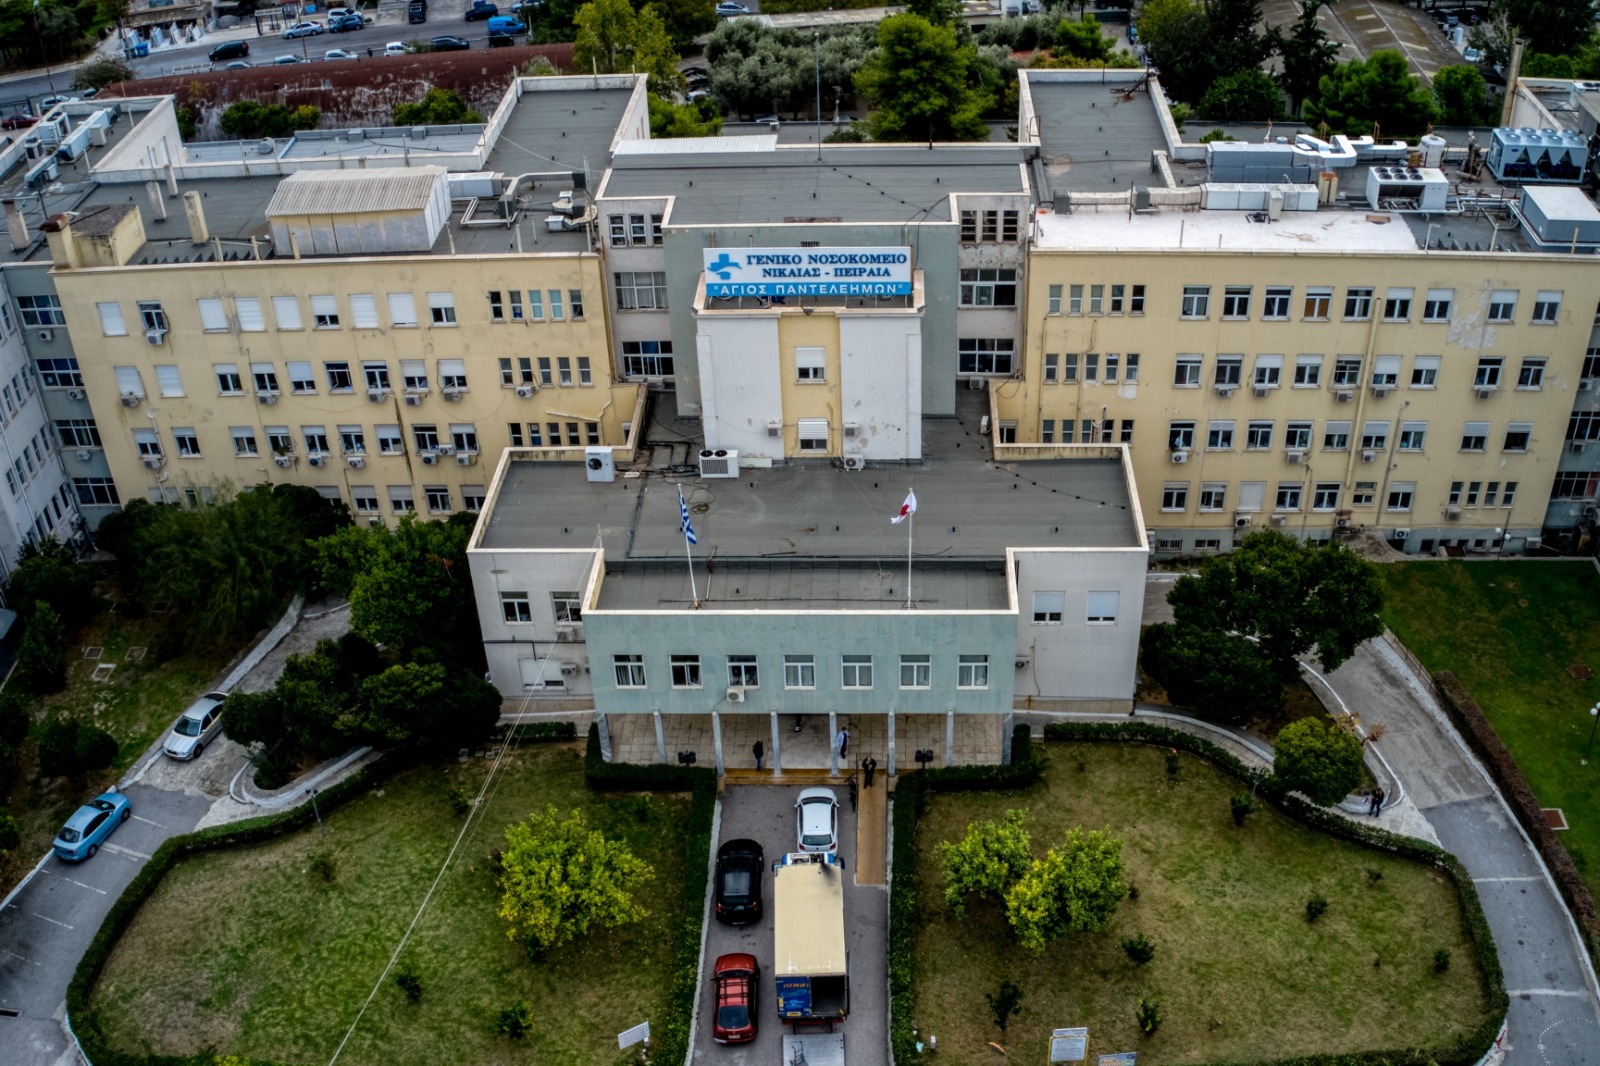 Νοσοκομείο Νίκαιας: Μειώνονται οι τακτικές χειρουργικές αίθουσες λόγω έλλειψης προσωπικού